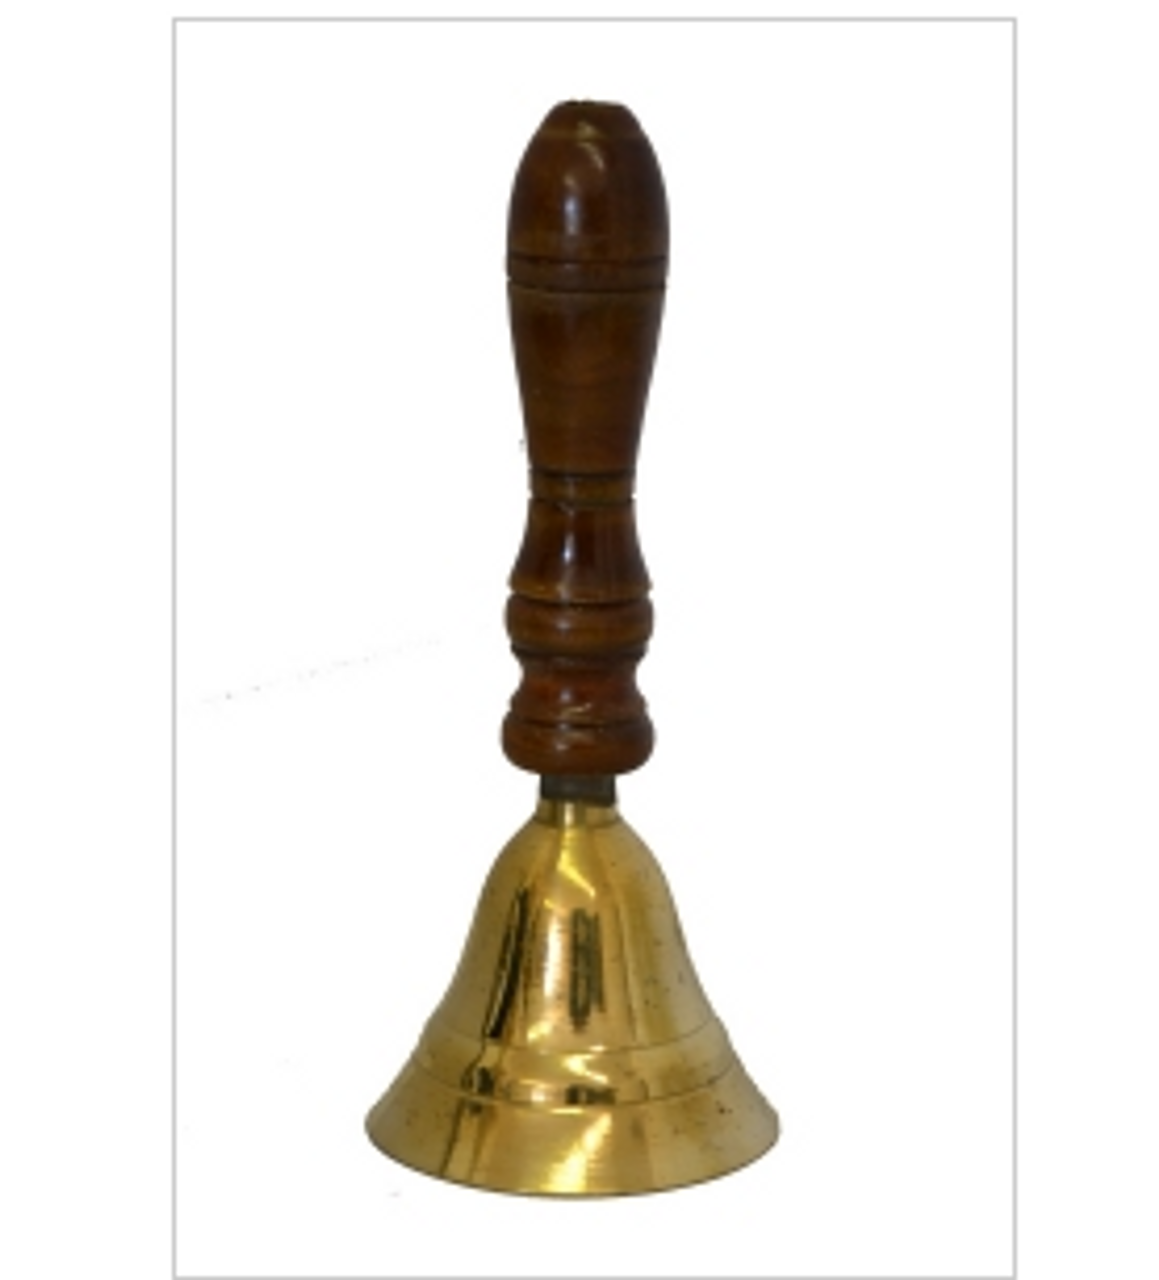 Bell Brass Hand Bell Wooden Handle Plain 5.5"